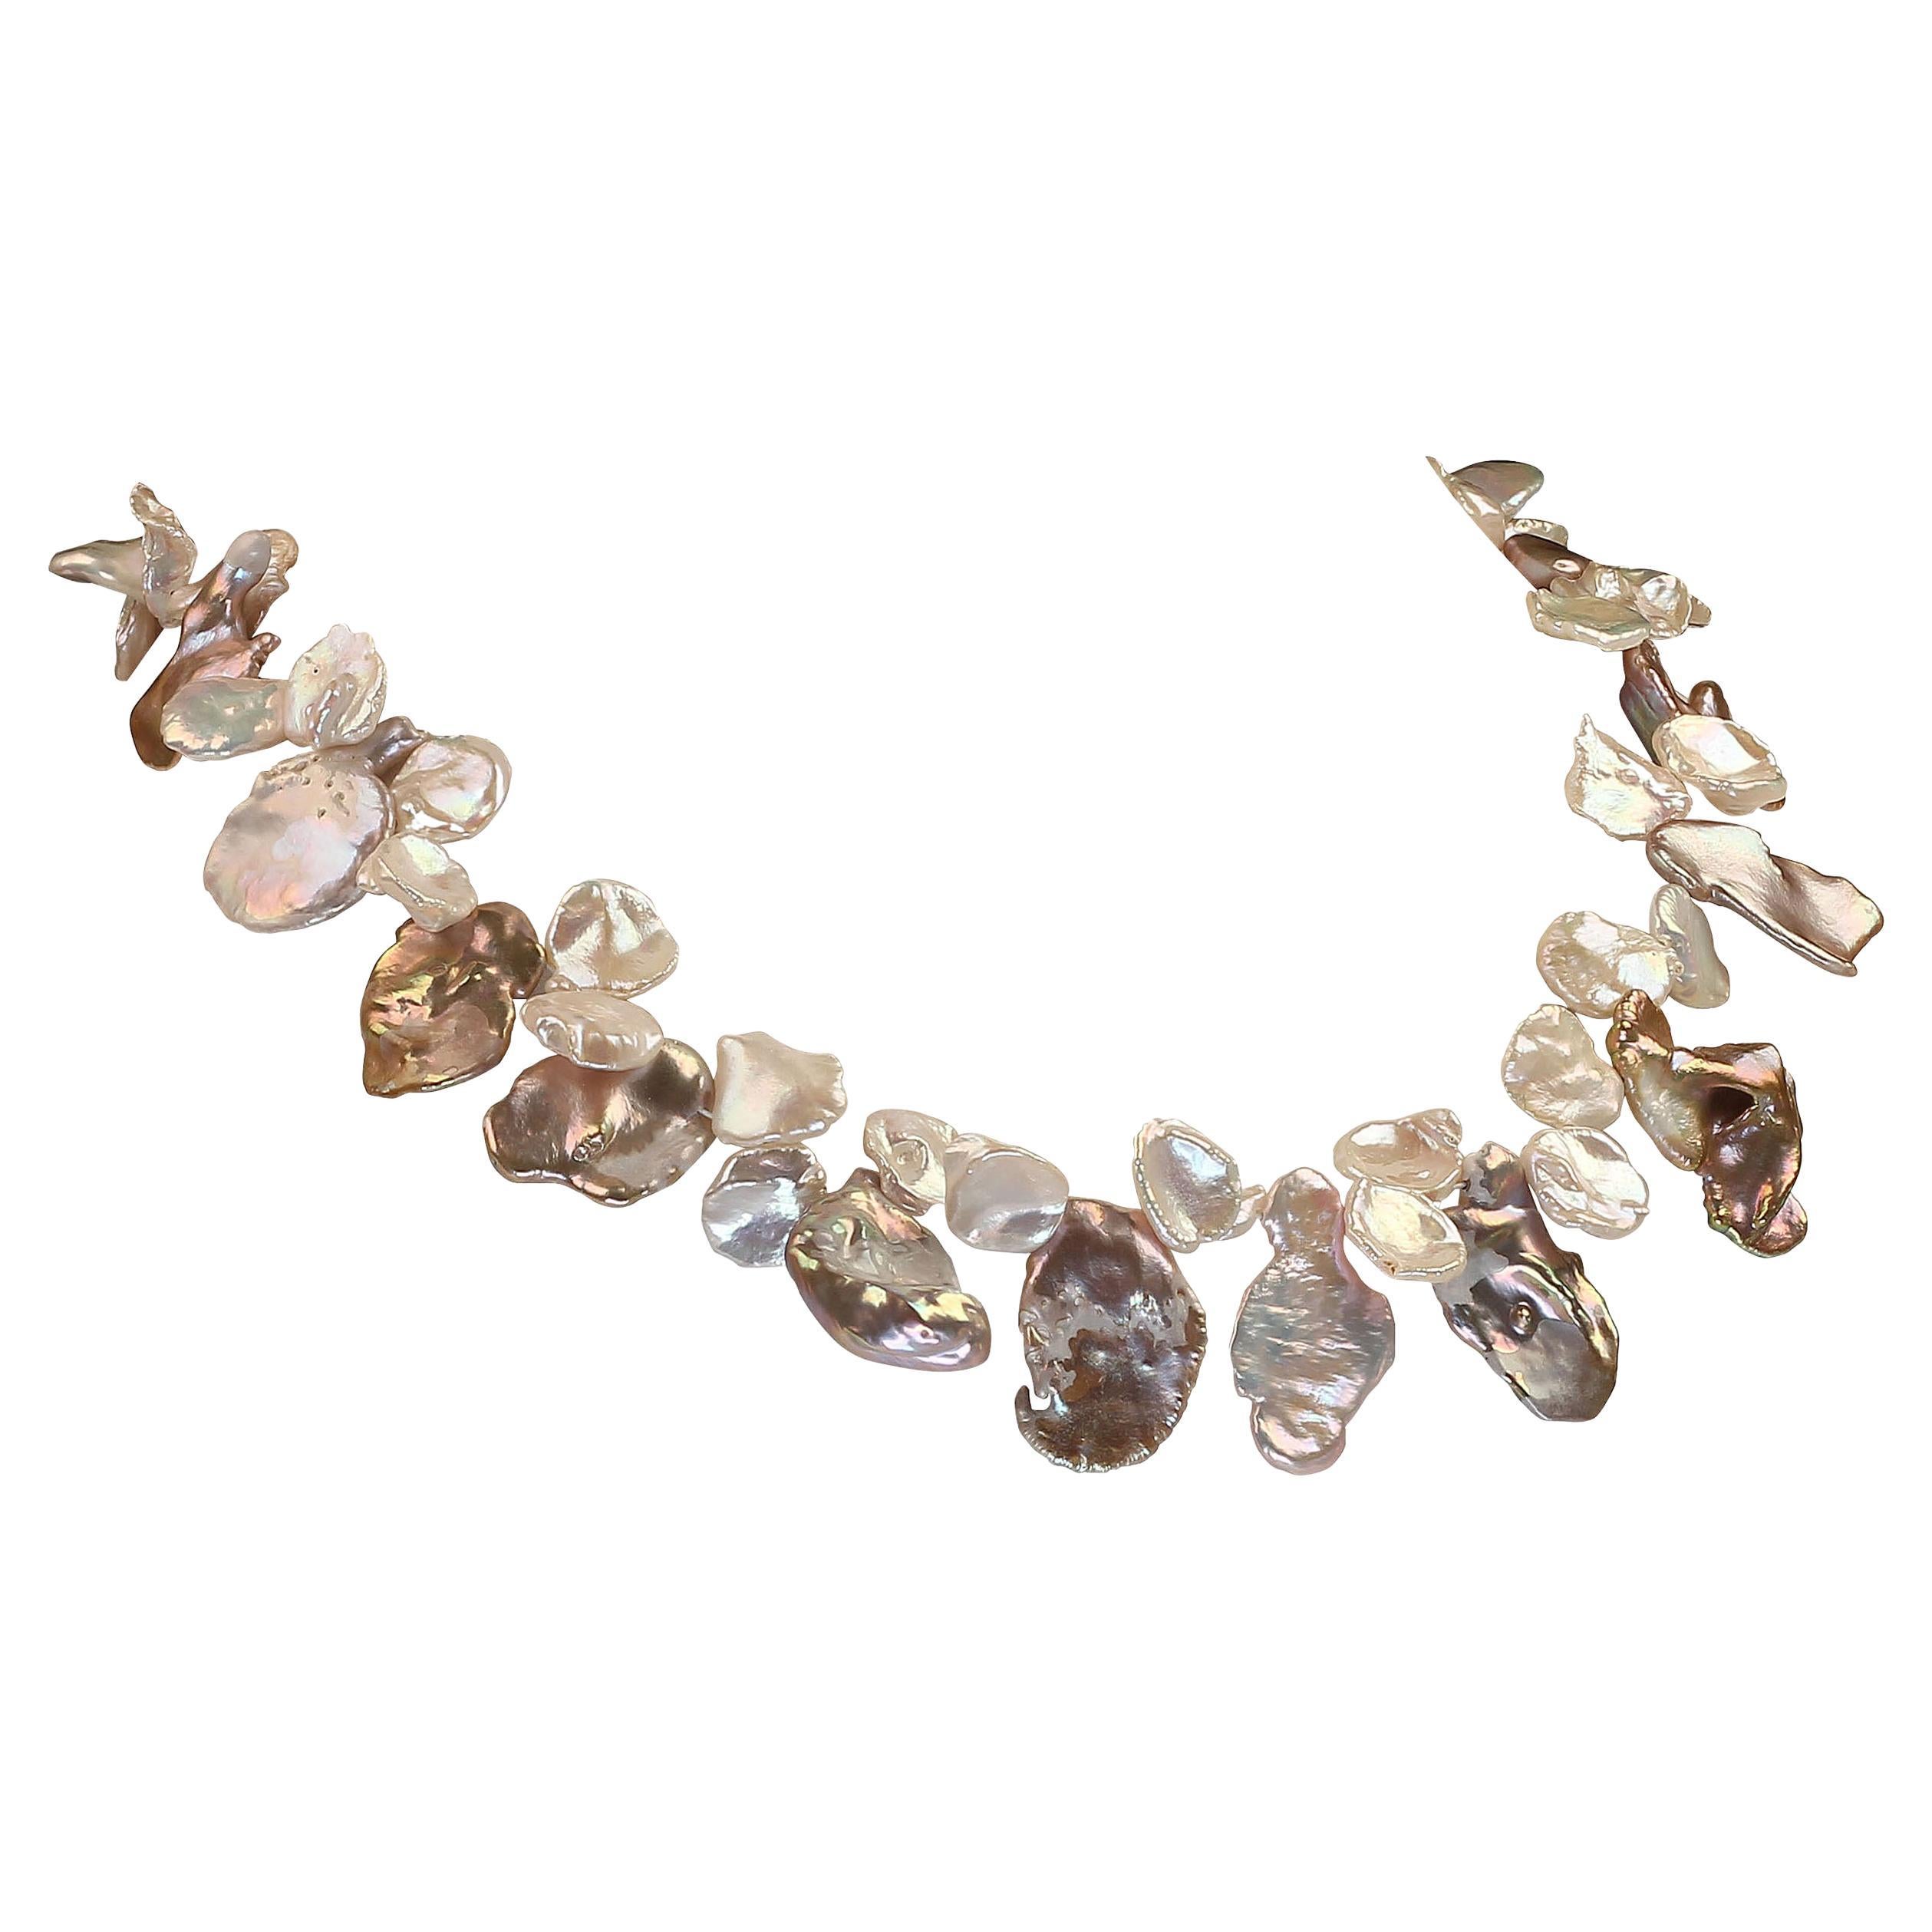 Ruhig bleiben und Perlen tragen

Einzigartige, handgefertigte Choker Keshi Perlenkette aus zwei verschiedenen Größen und Farben von schönen Keshi Perlen. Der Fokal ist ein funky silbrig/bronziges, irisierendes, faltiges Rechteck (24 x 15 MM), wie